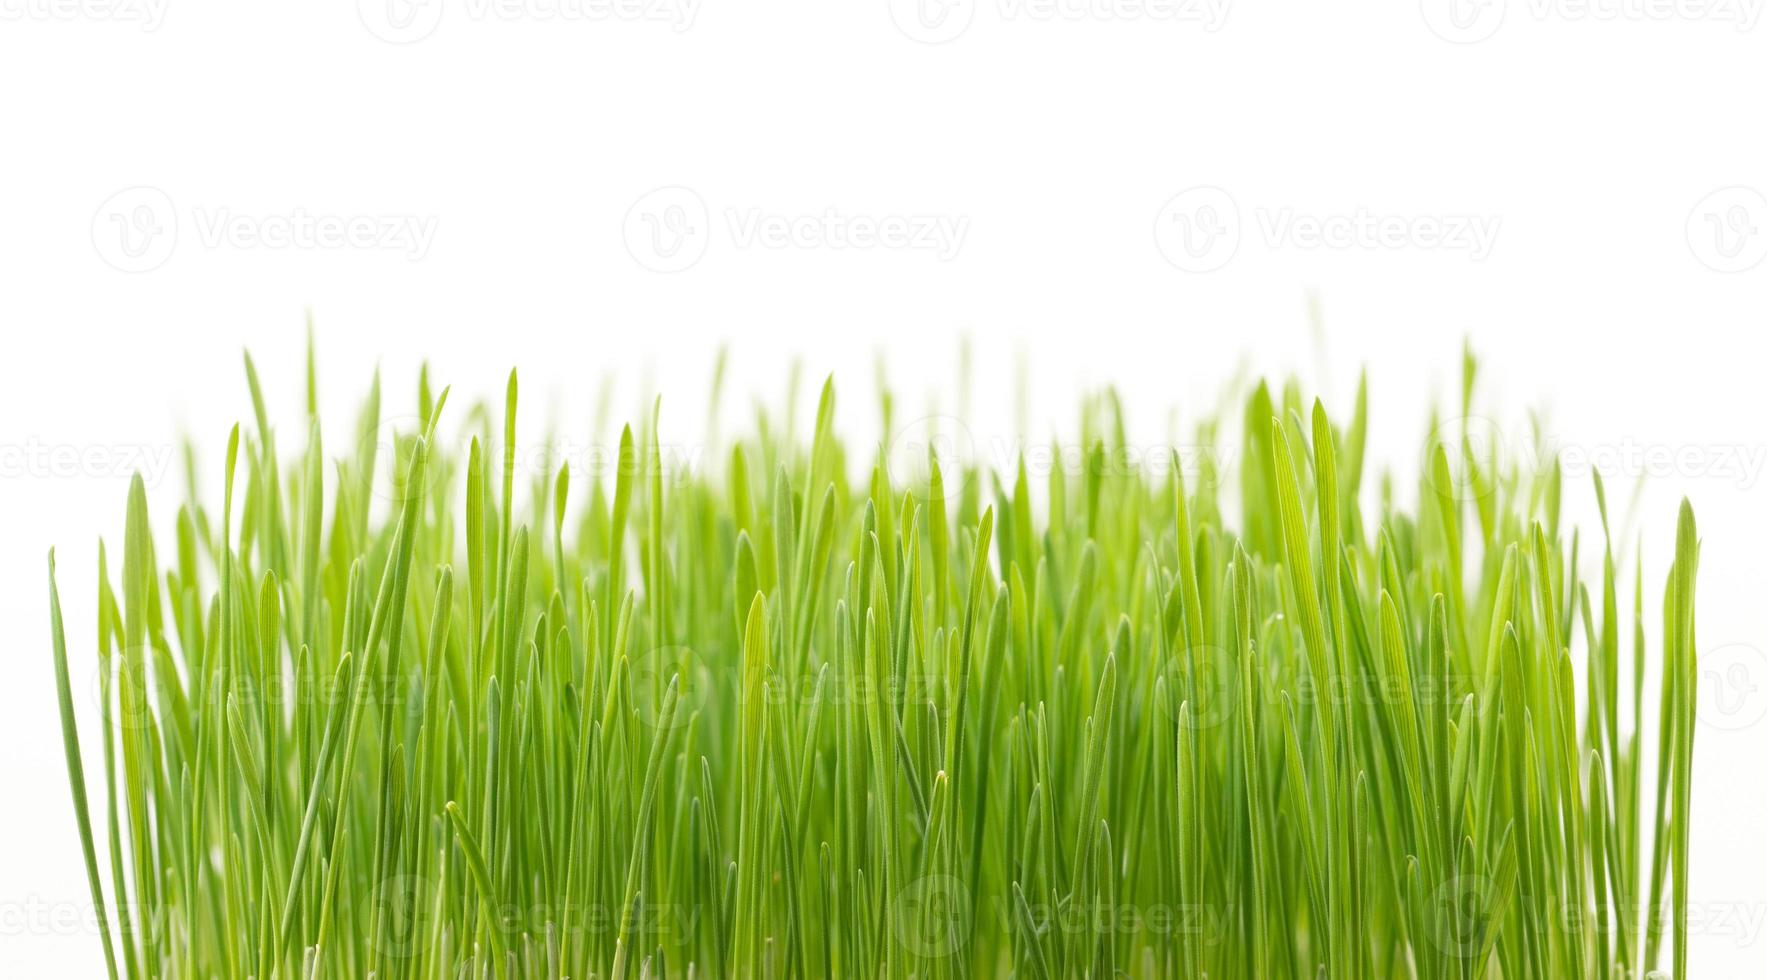 groen tarwegras dat op witte achtergrond wordt geïsoleerd foto